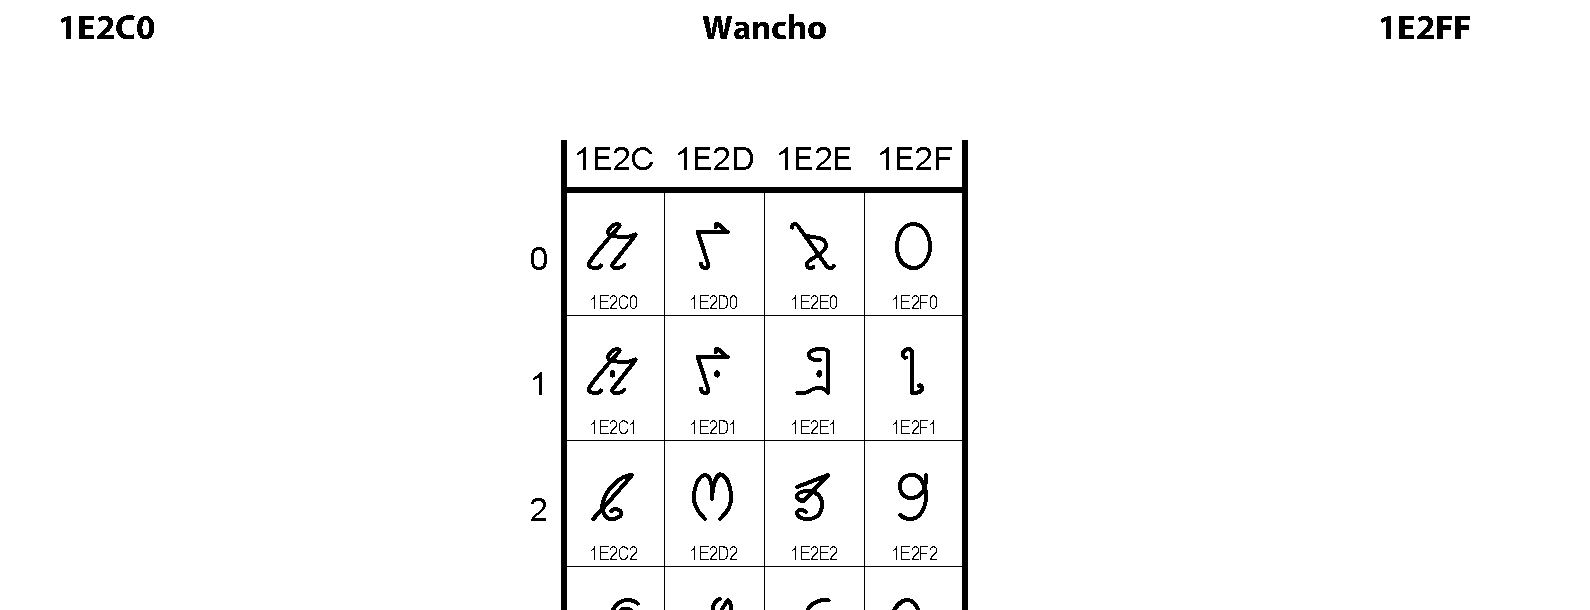 Unicode - Wancho